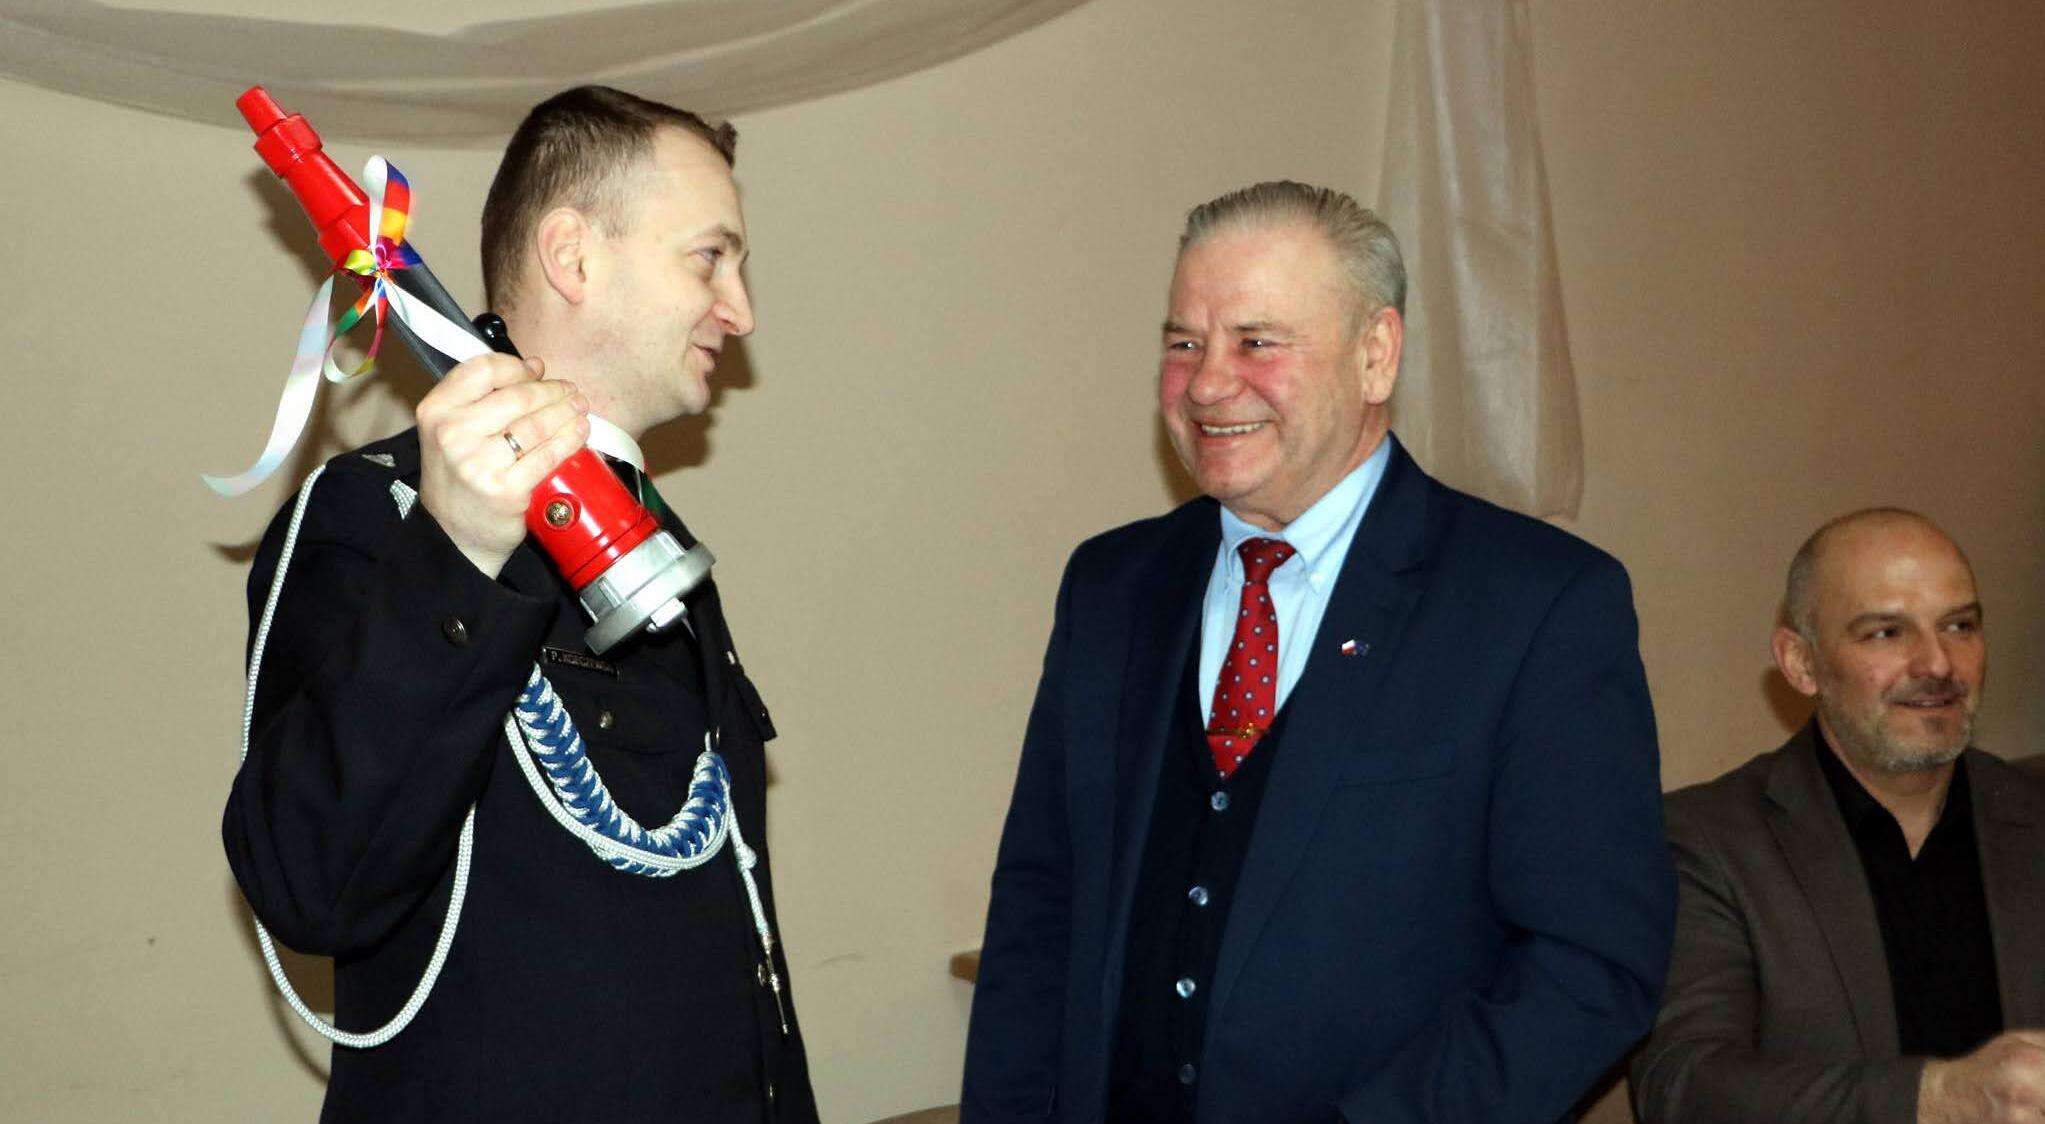 Wicemarszałek Marek Olbryś z prawej. Z lewej strażak z prądownicą w uniesionej dłoni.